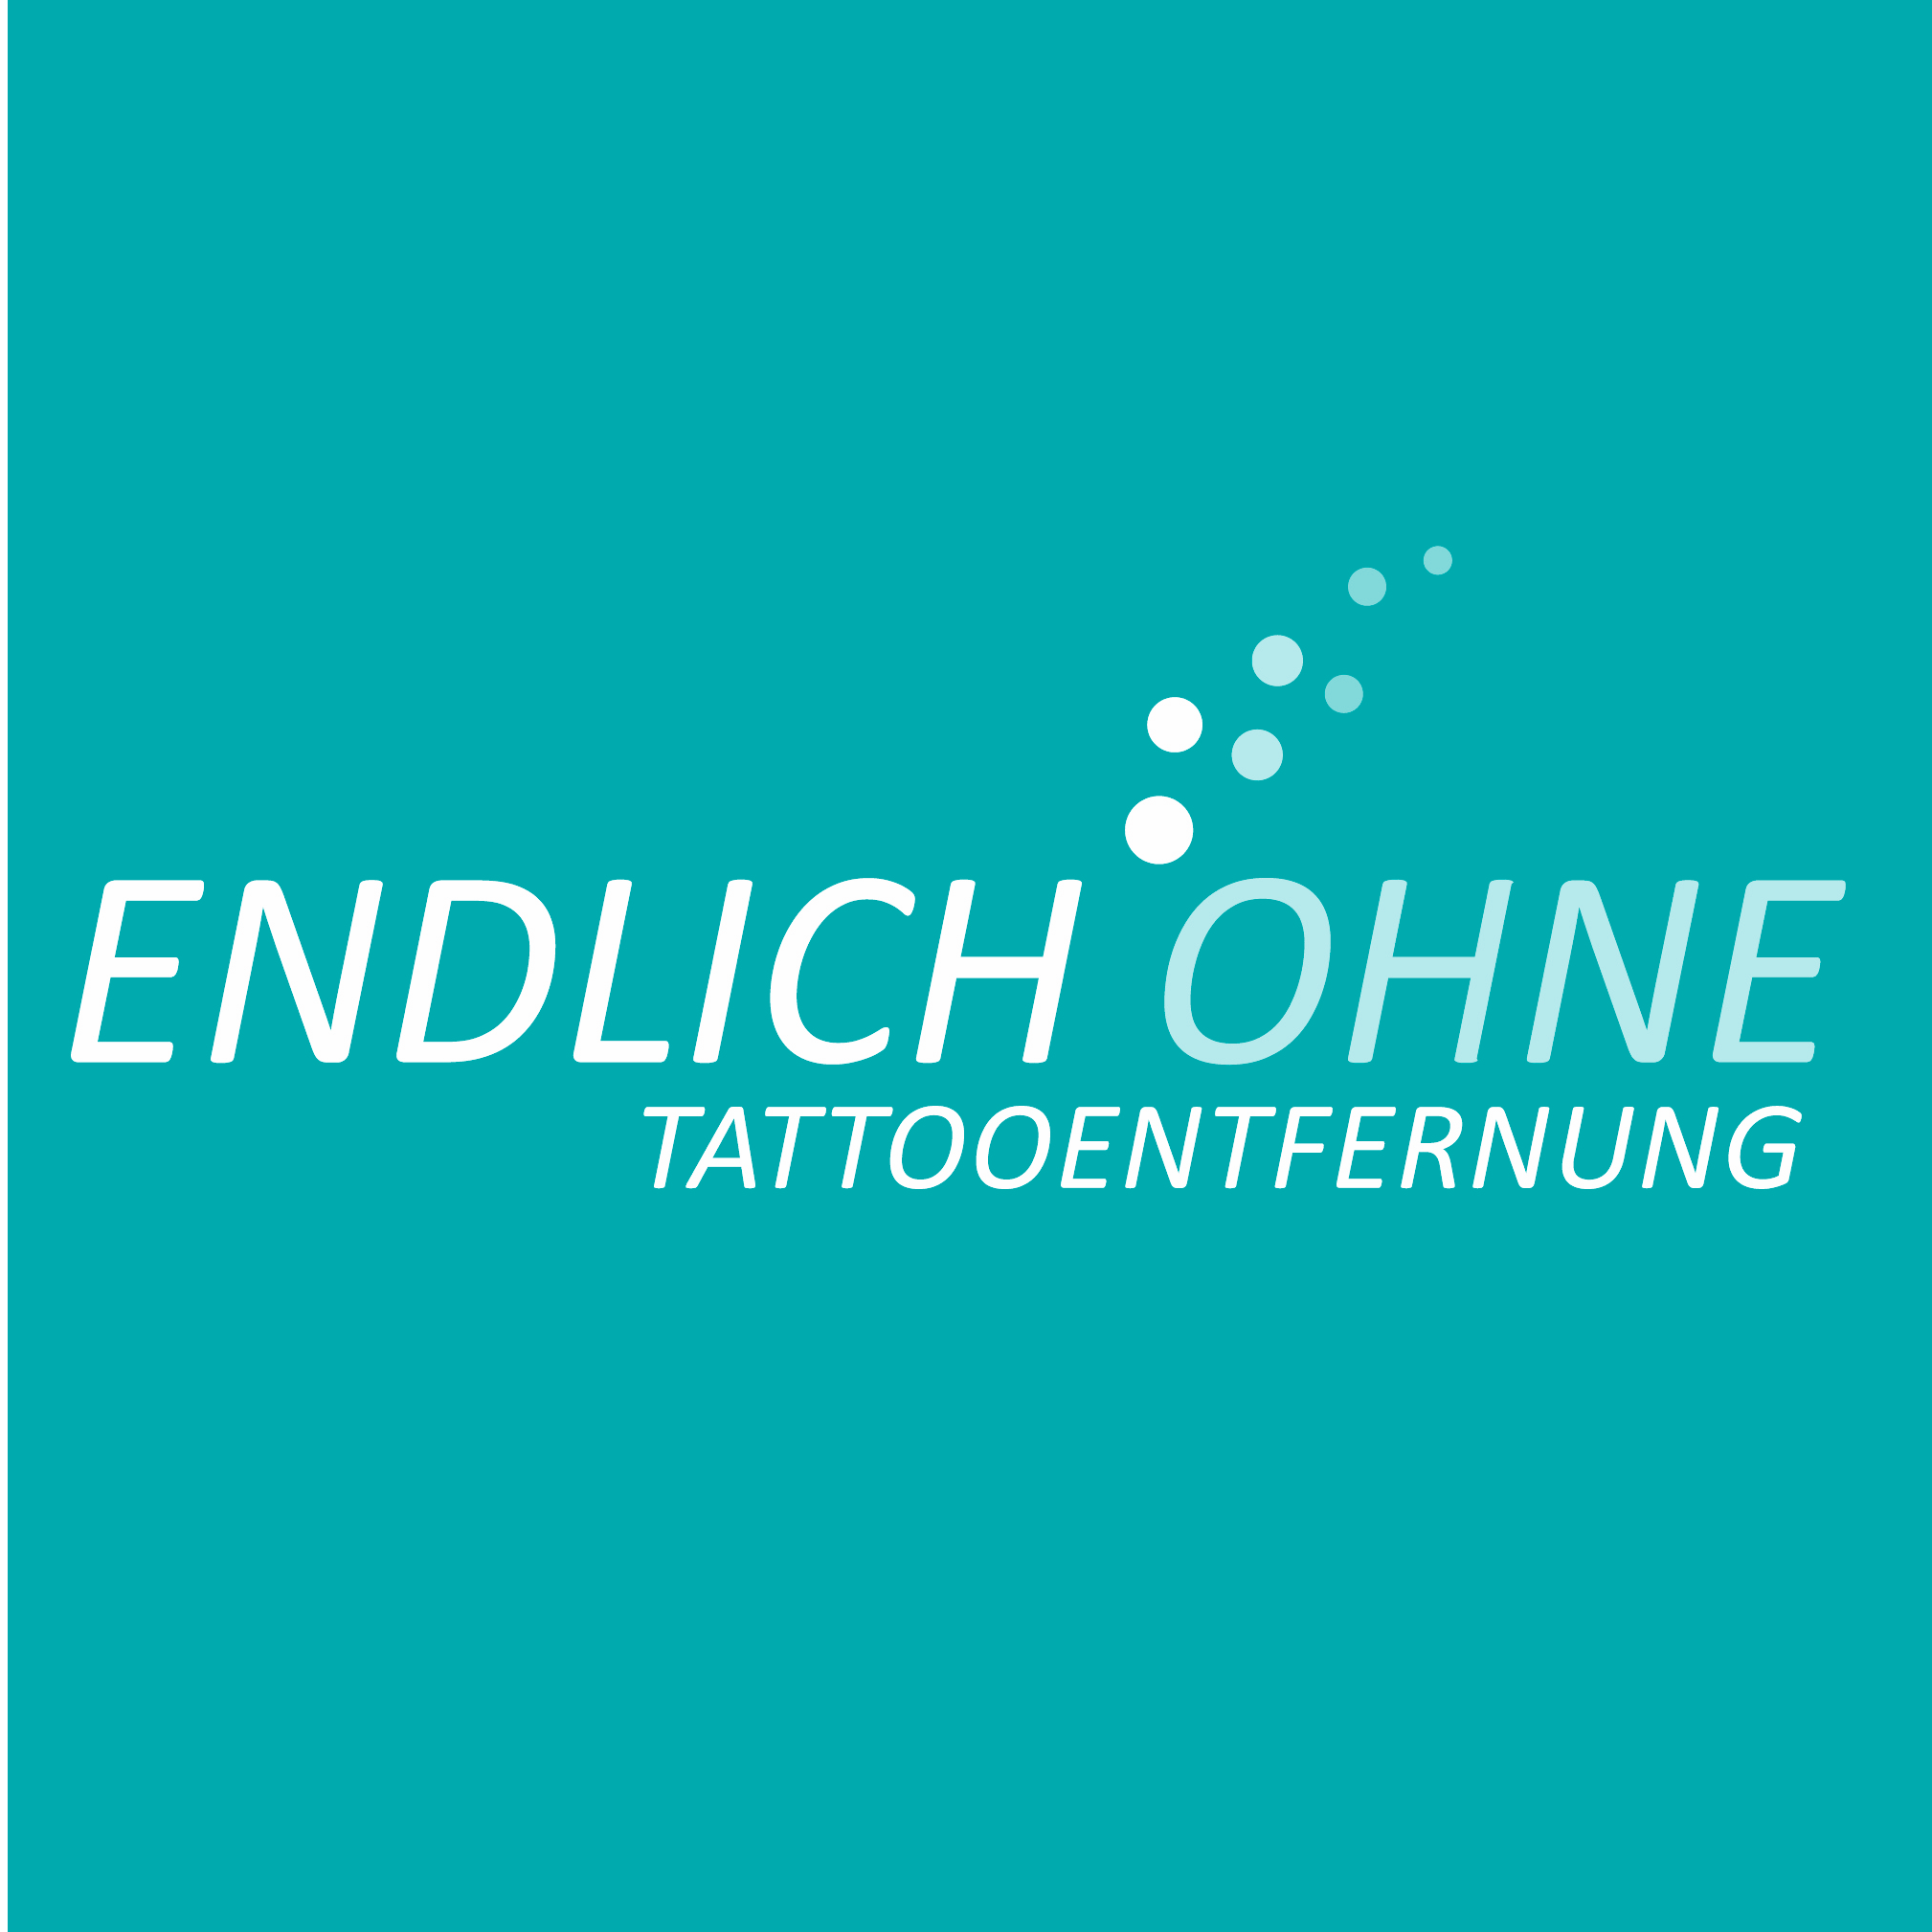 Endlich Ohne - Filiale Essen in Essen - Logo